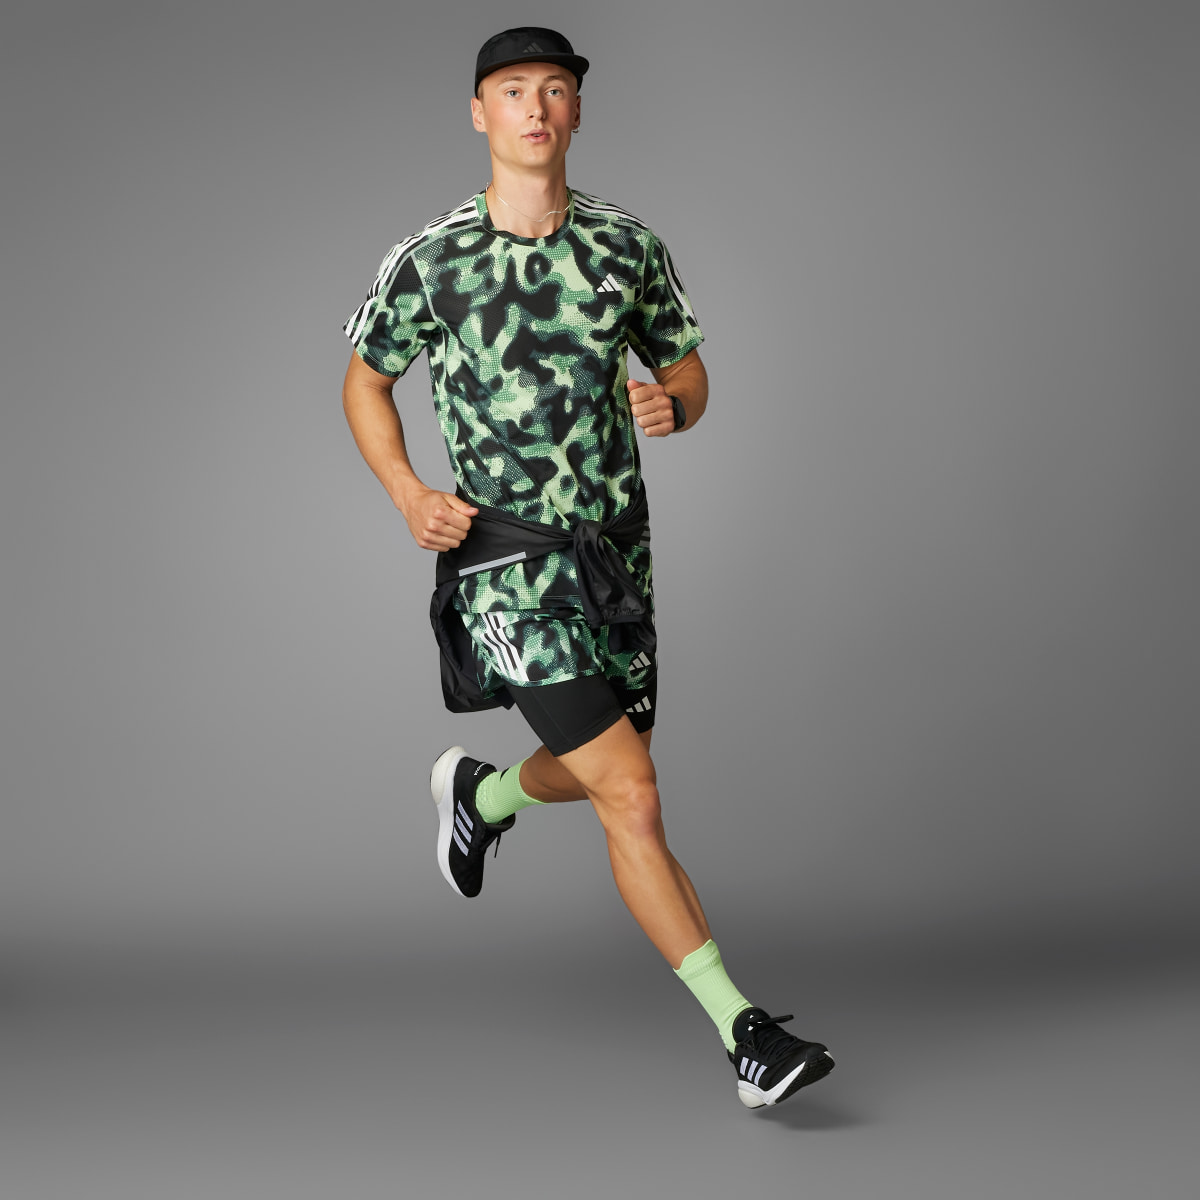 Adidas Own the Run 3-Stripes Allover Print T-Shirt. 9